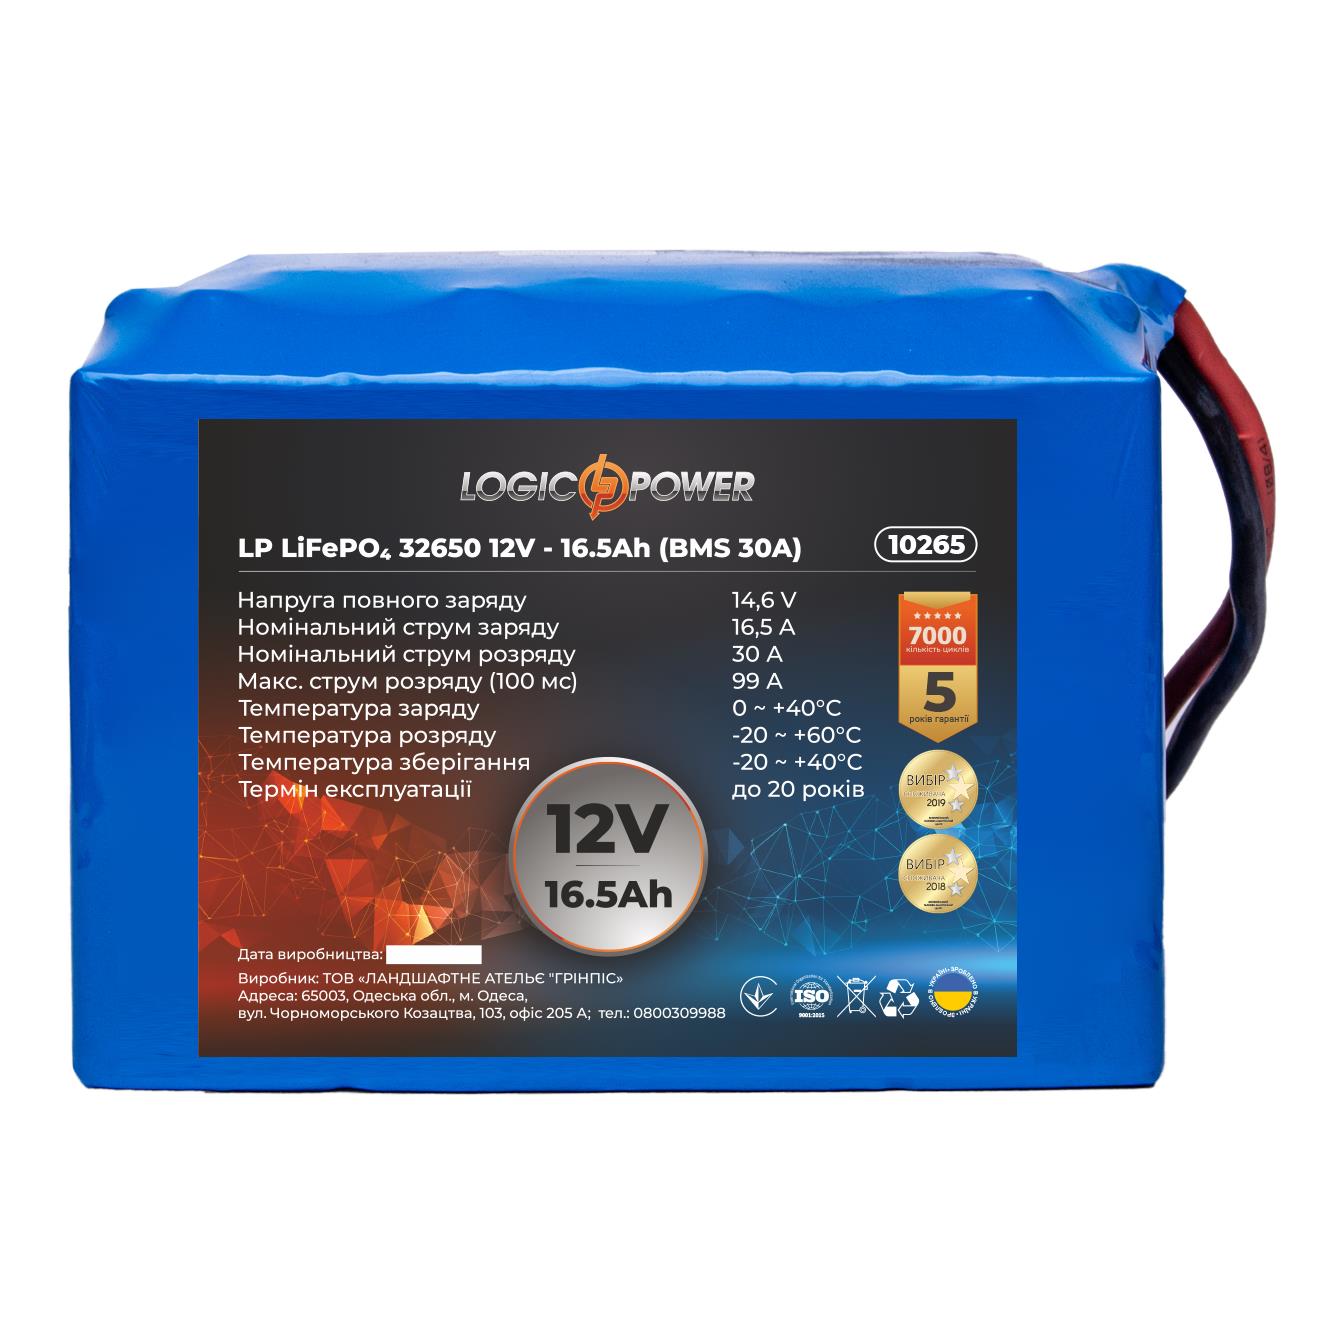 Аккумулятор литий-железо-фосфатный LogicPower LP LiFePO4 32650 12V - 16.5 Ah (BMS 30A) (10265) в интернет-магазине, главное фото